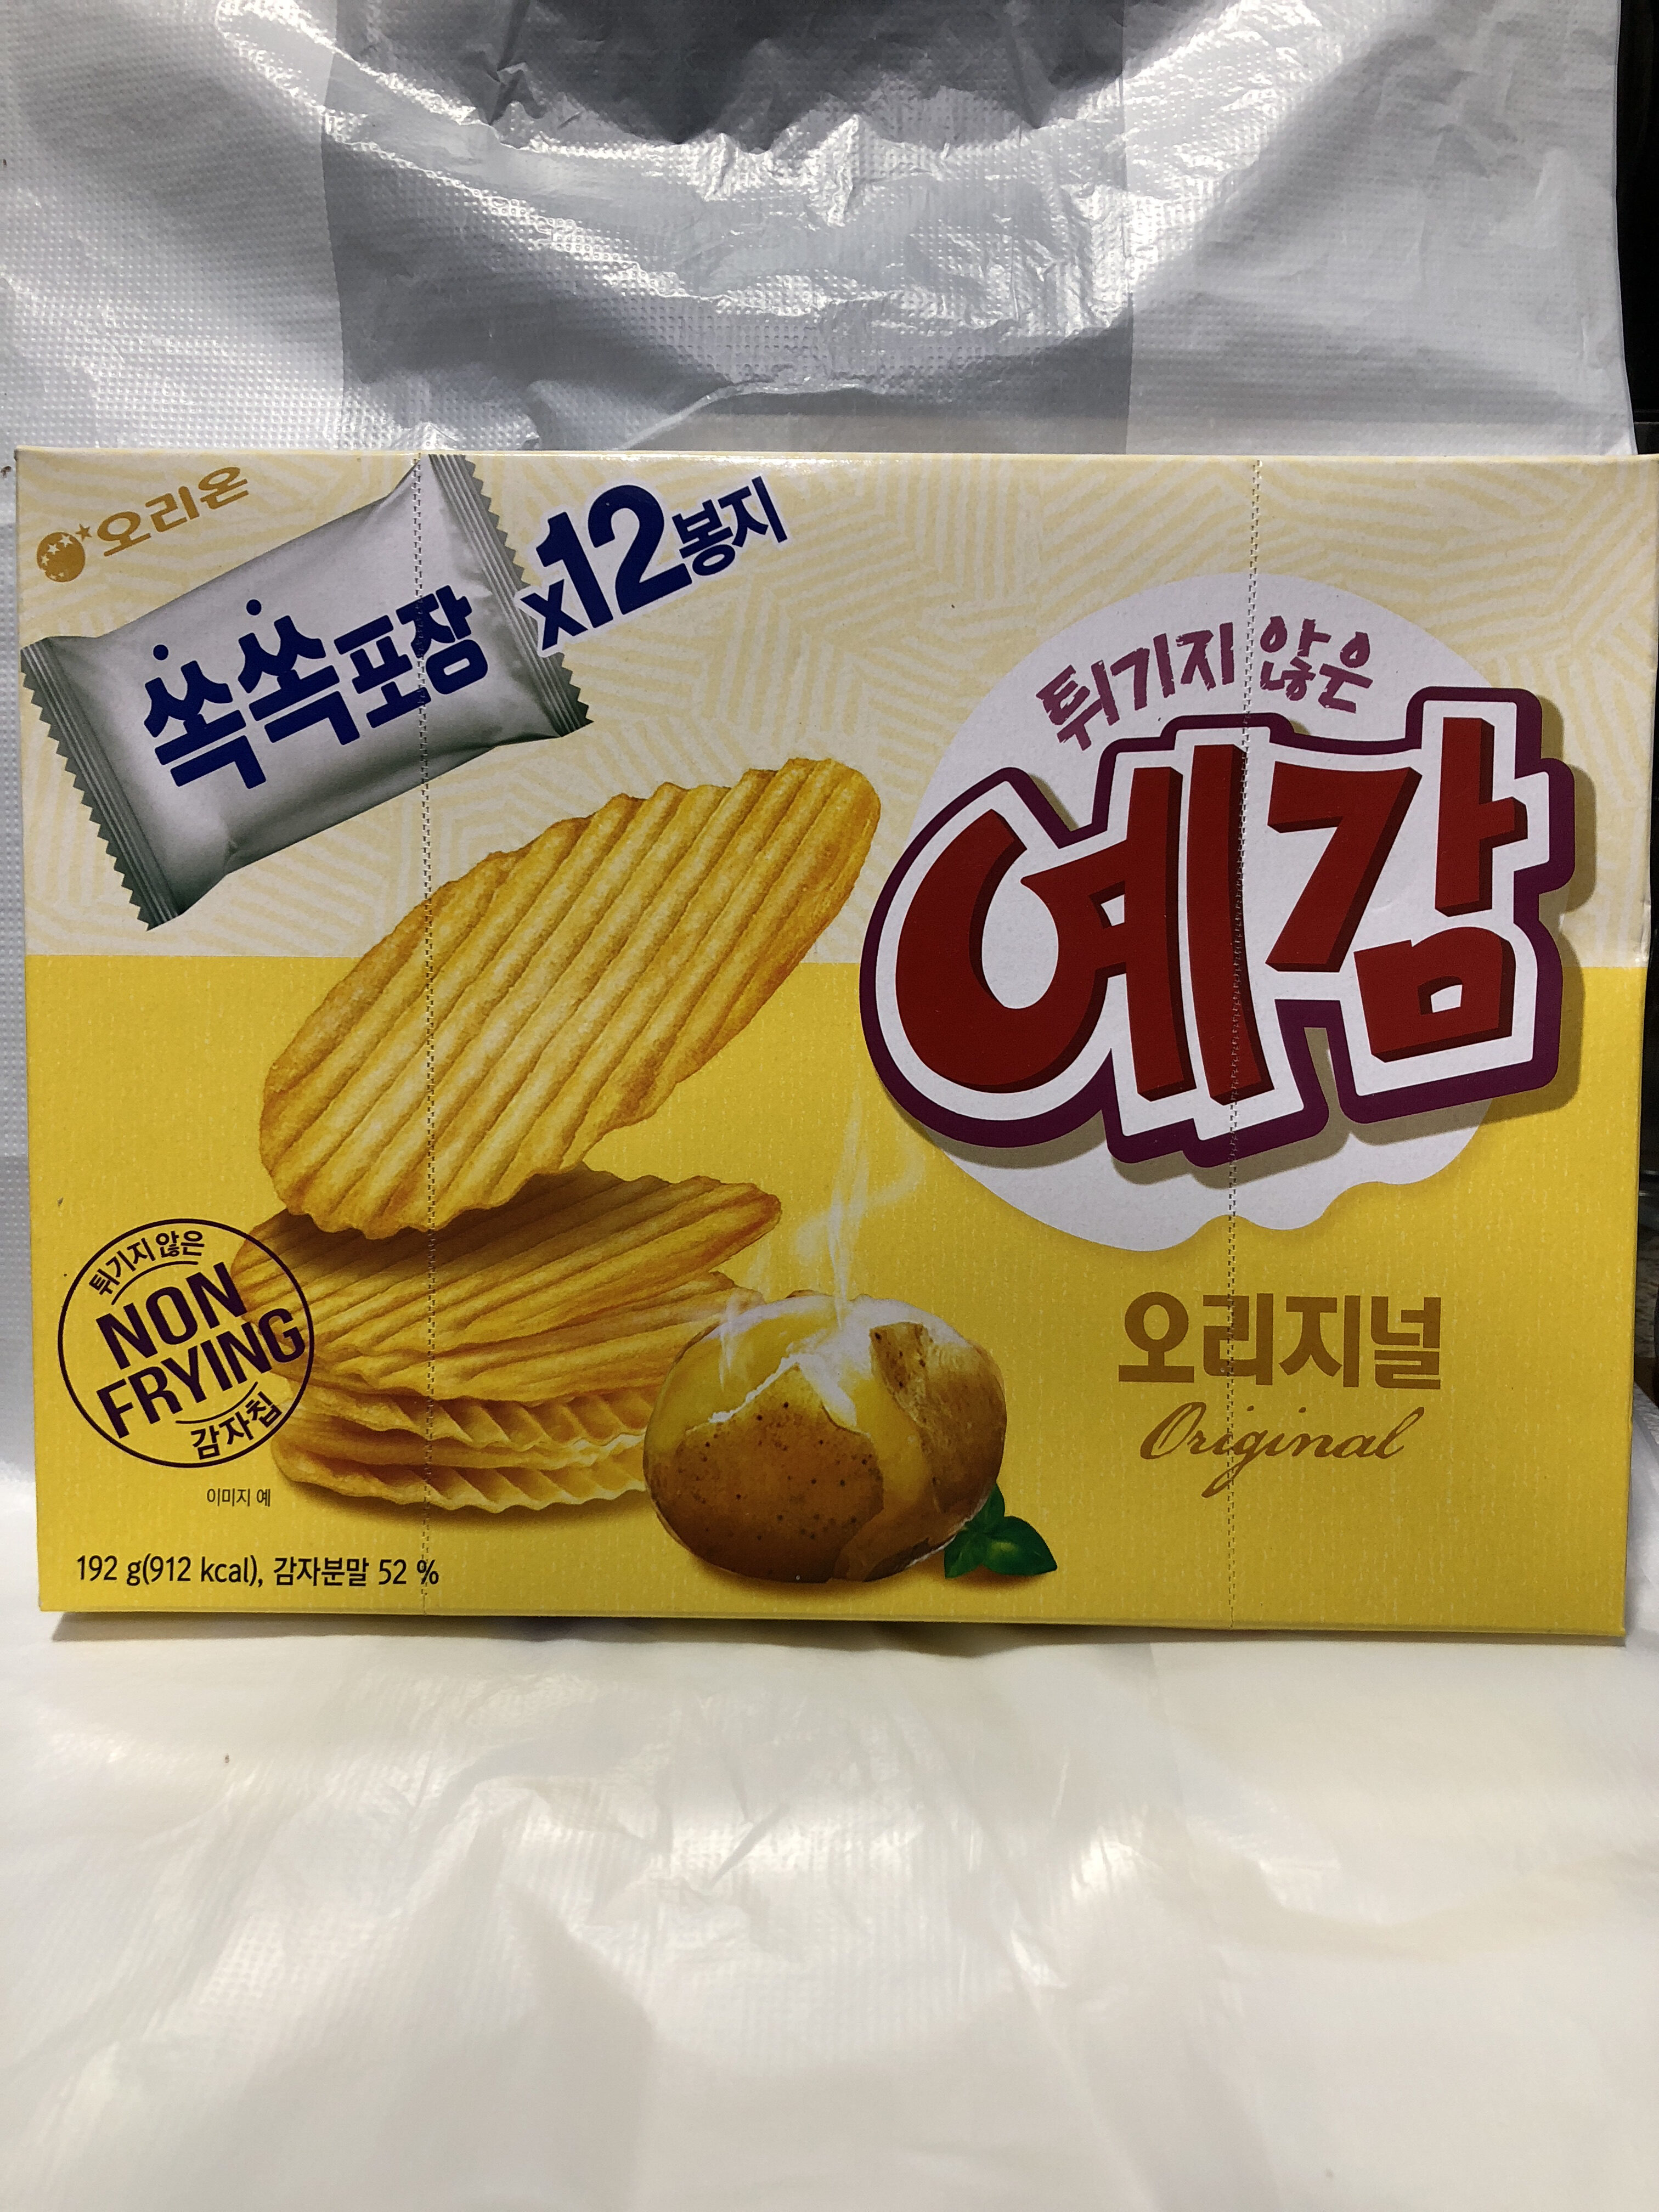 Yegam Potato Chips Box Original Flavour - Product - en